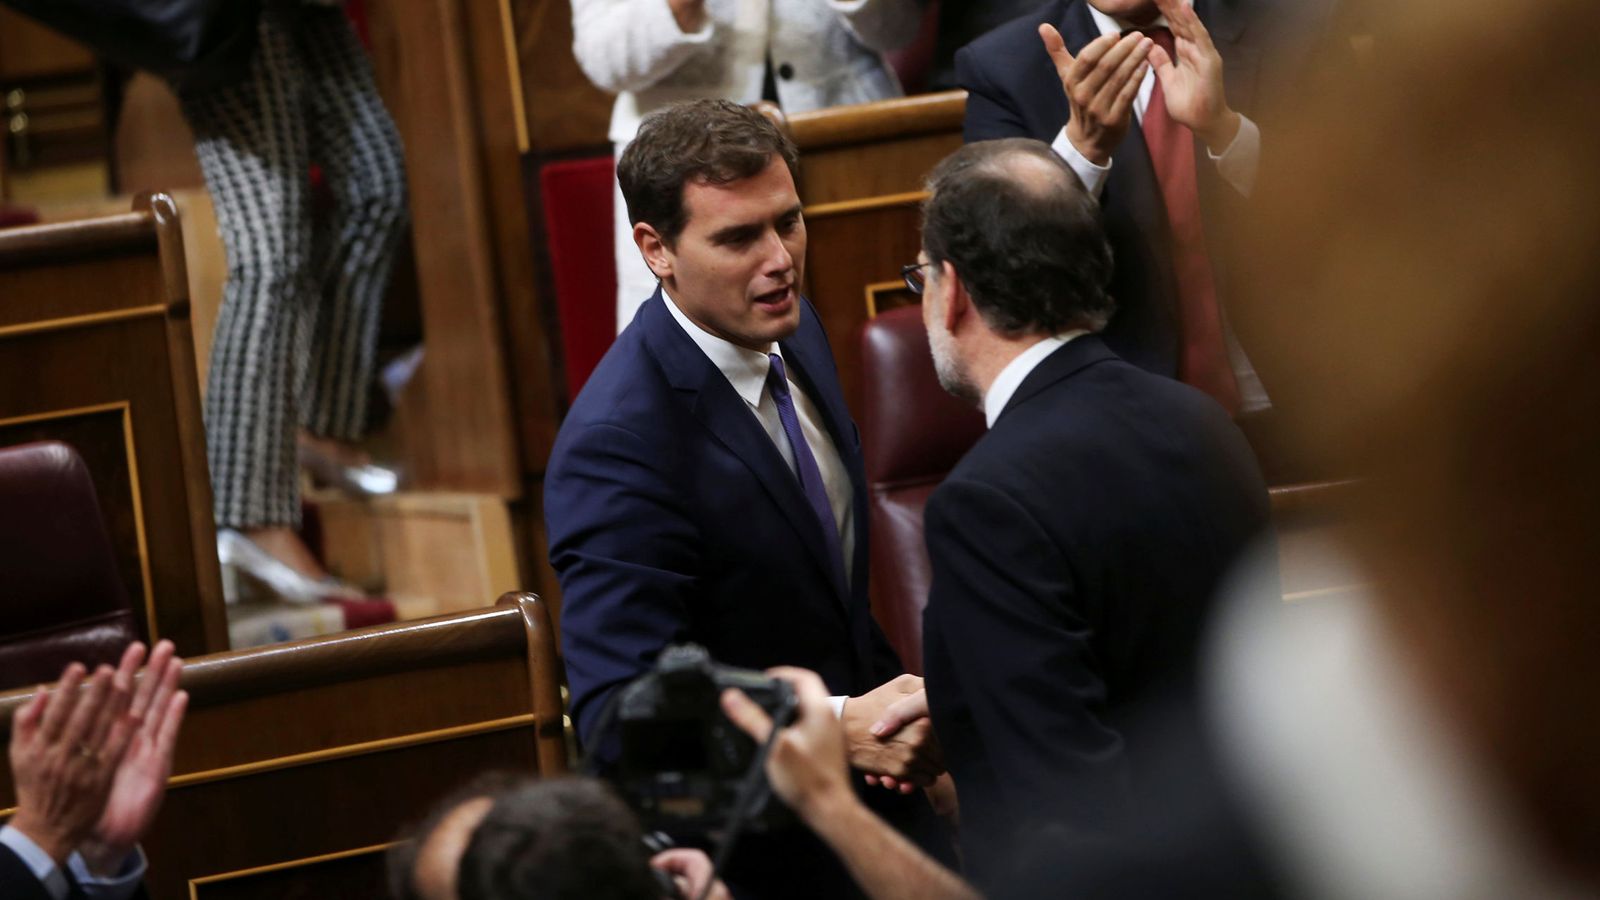 Foto: El líder de Ciudadanos, Albert Rivera, felicita a Mariano Rajoy tras ser investido presidente del Gobierno. (Reuters)